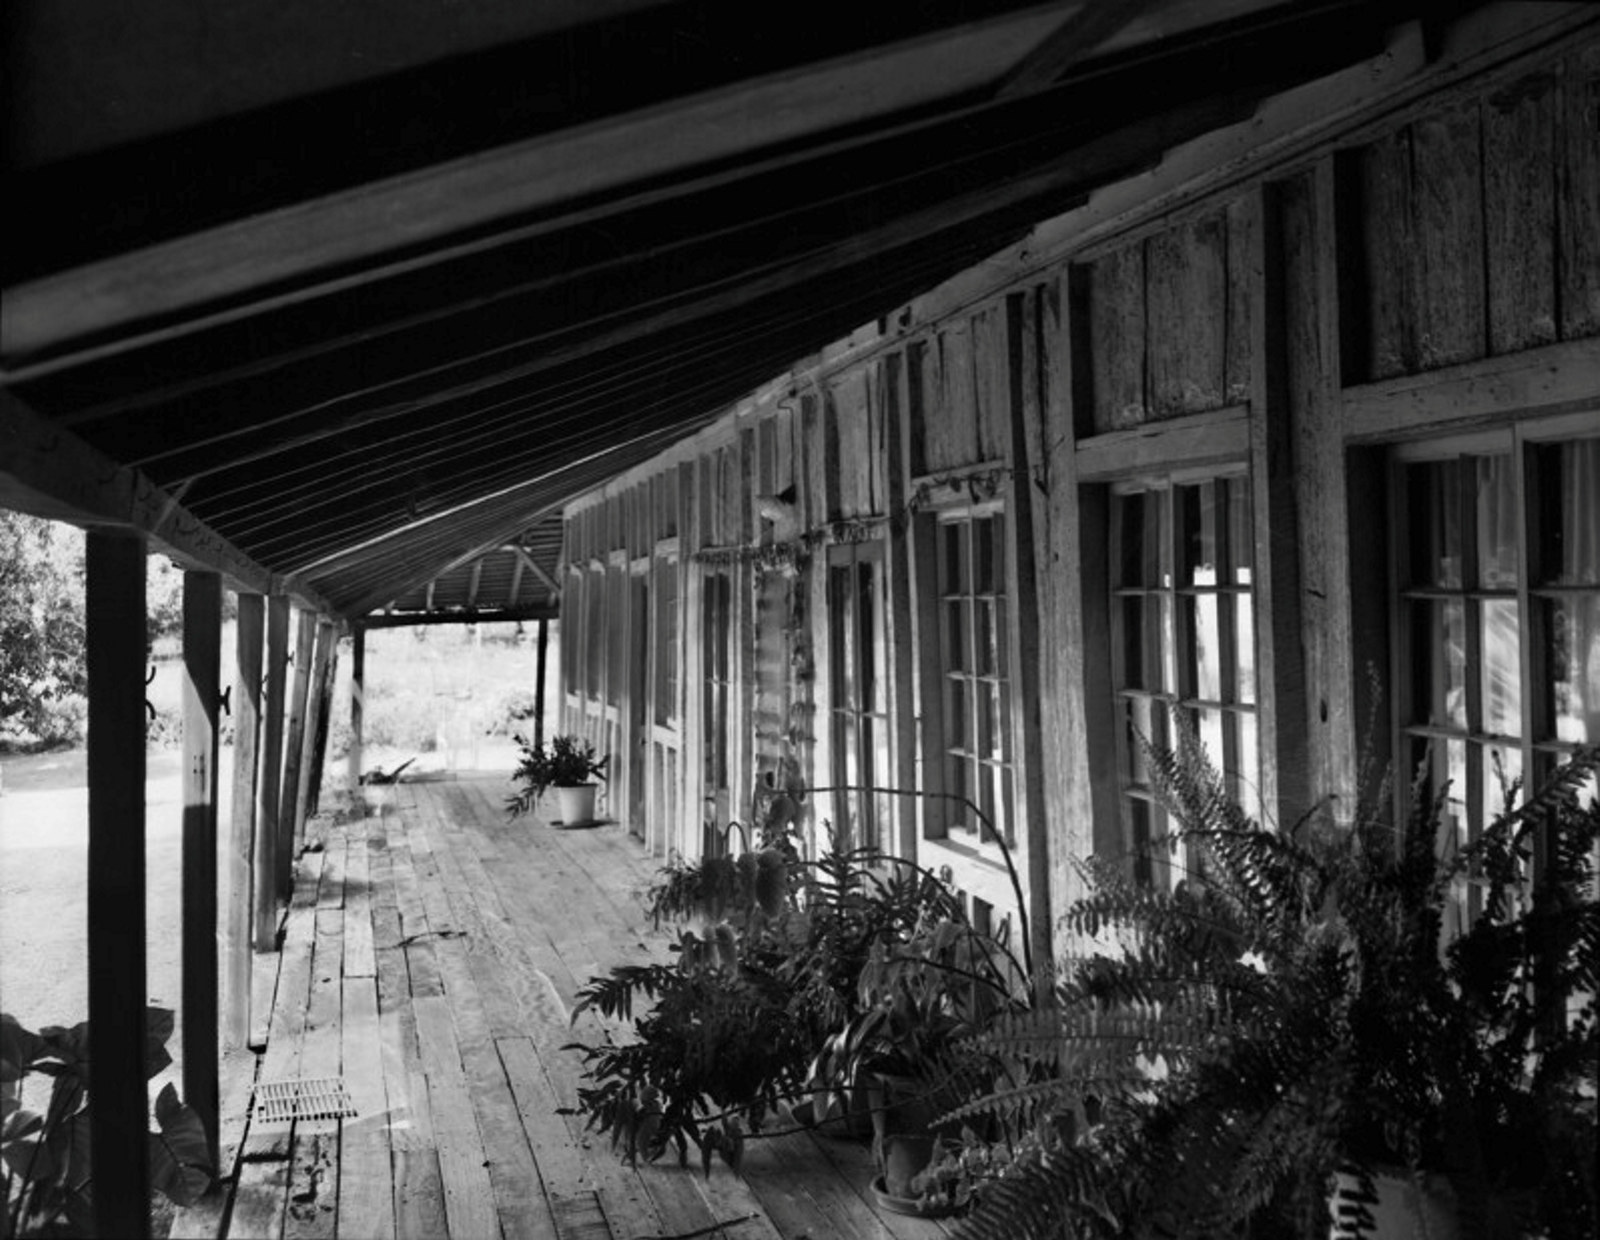 Northern verandah and timber slab walls at Cressbrook homestead, Cressbrook, Queensland, 1968